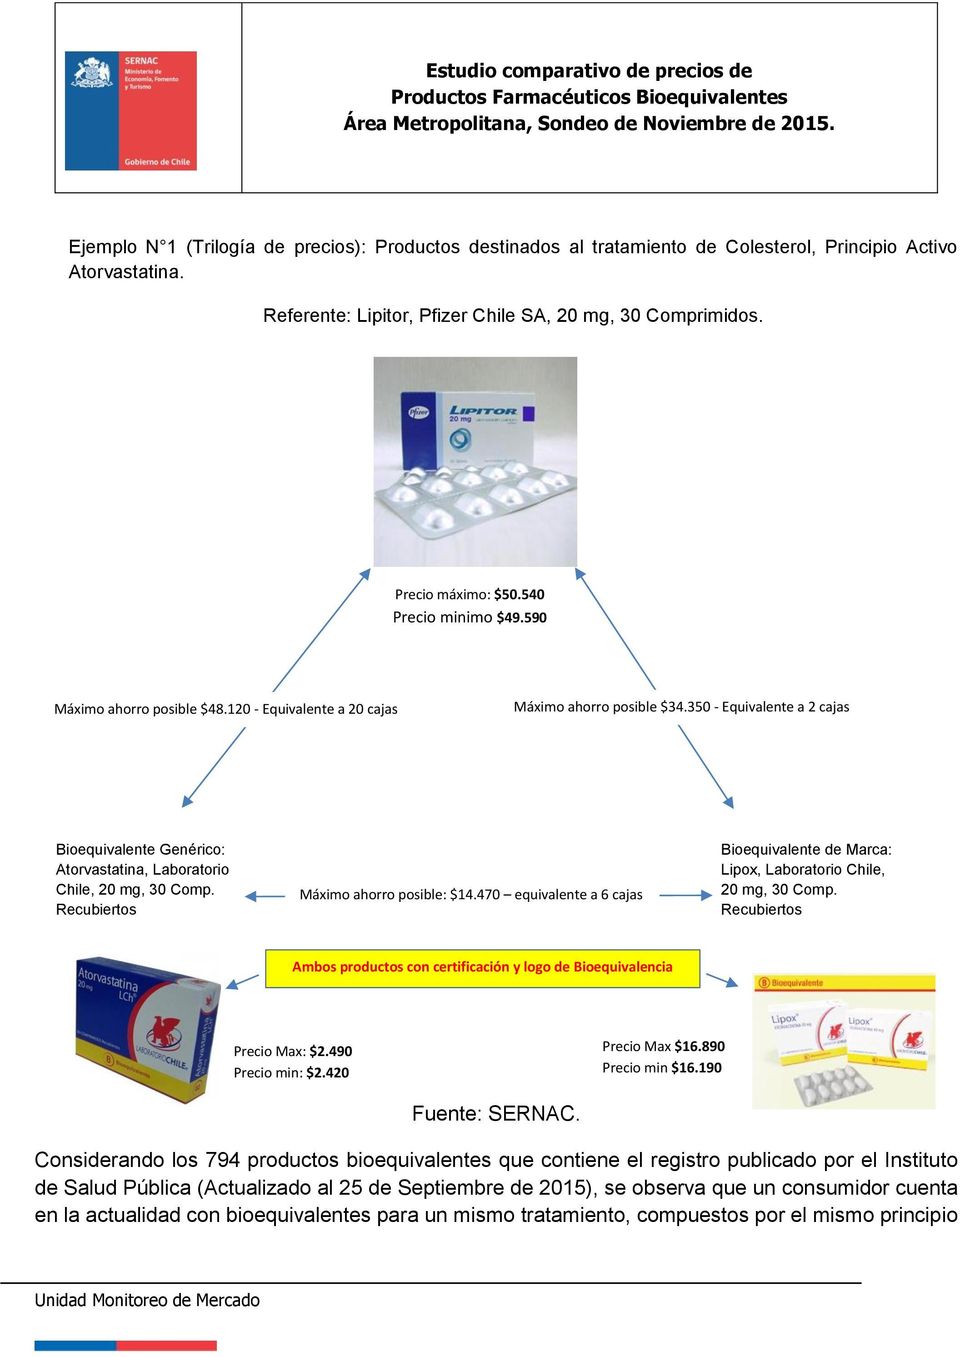 350 - Equivalente a 2 cajas aprox Bioequivalente Genérico: Atorvastatina, Laboratorio Chile, 20 mg, 30 Comp. Recubiertos Máximo ahorro posible: $14.